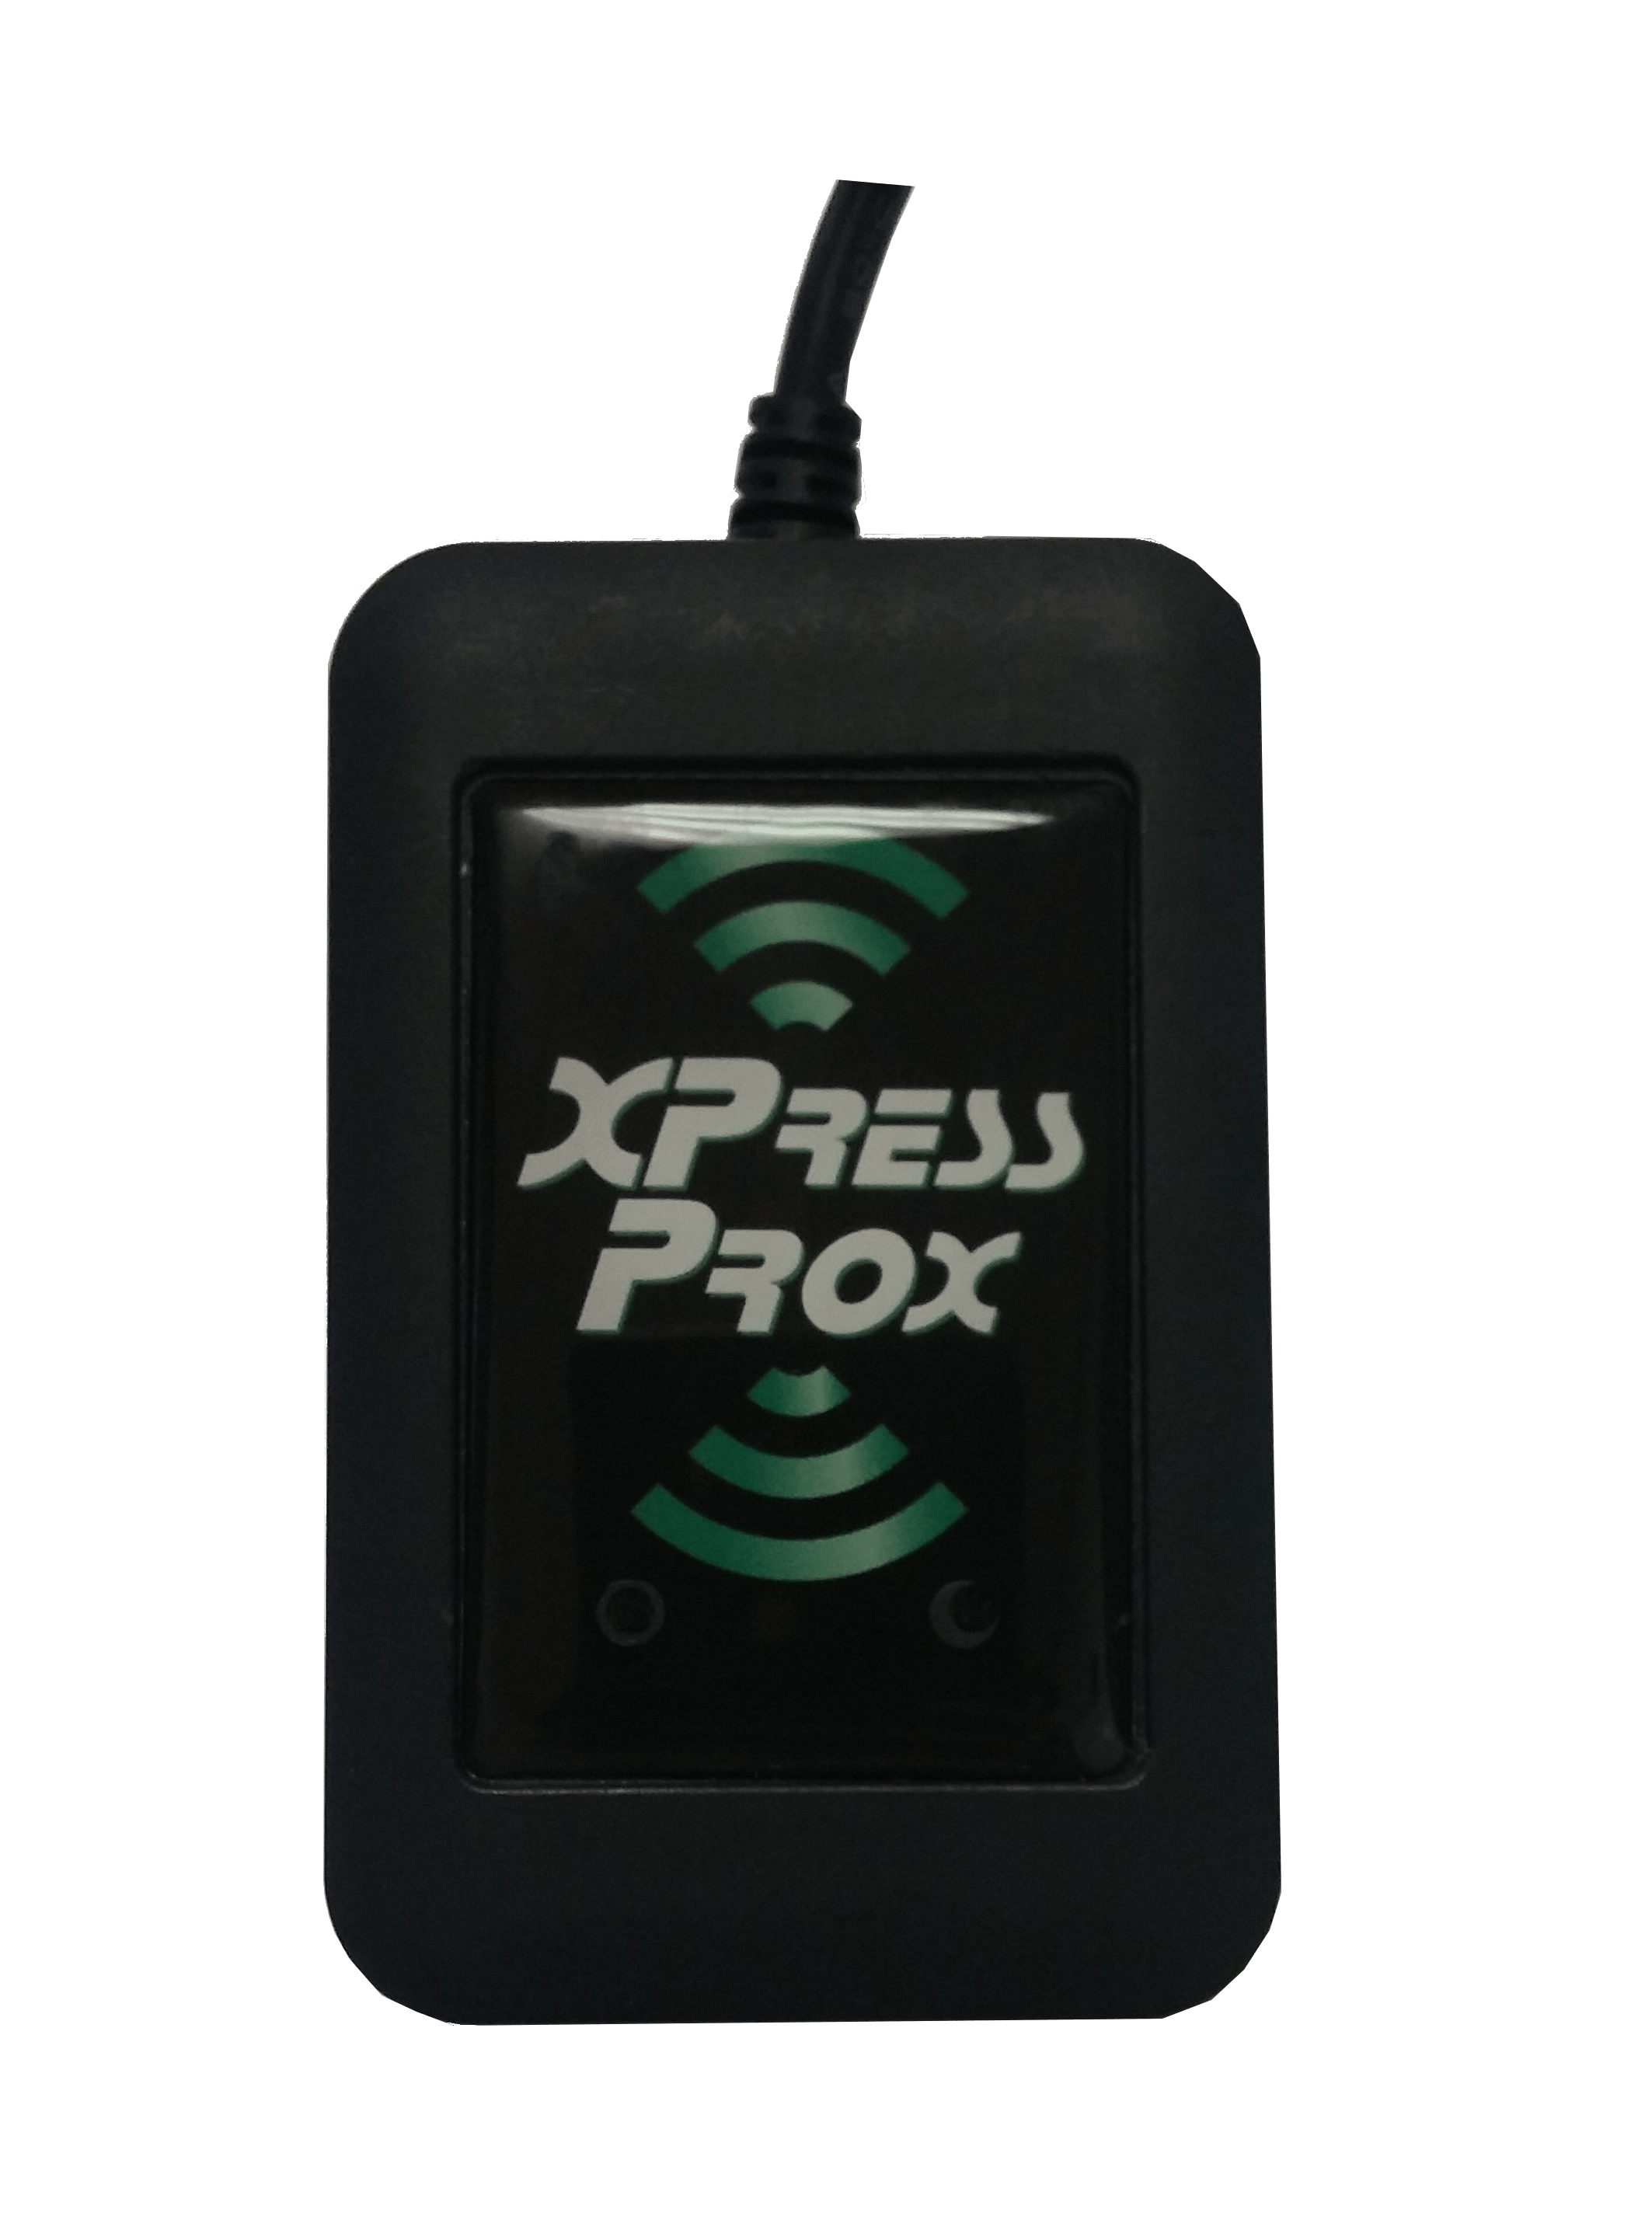 Lettore di badge USB da tavolo XPressProx